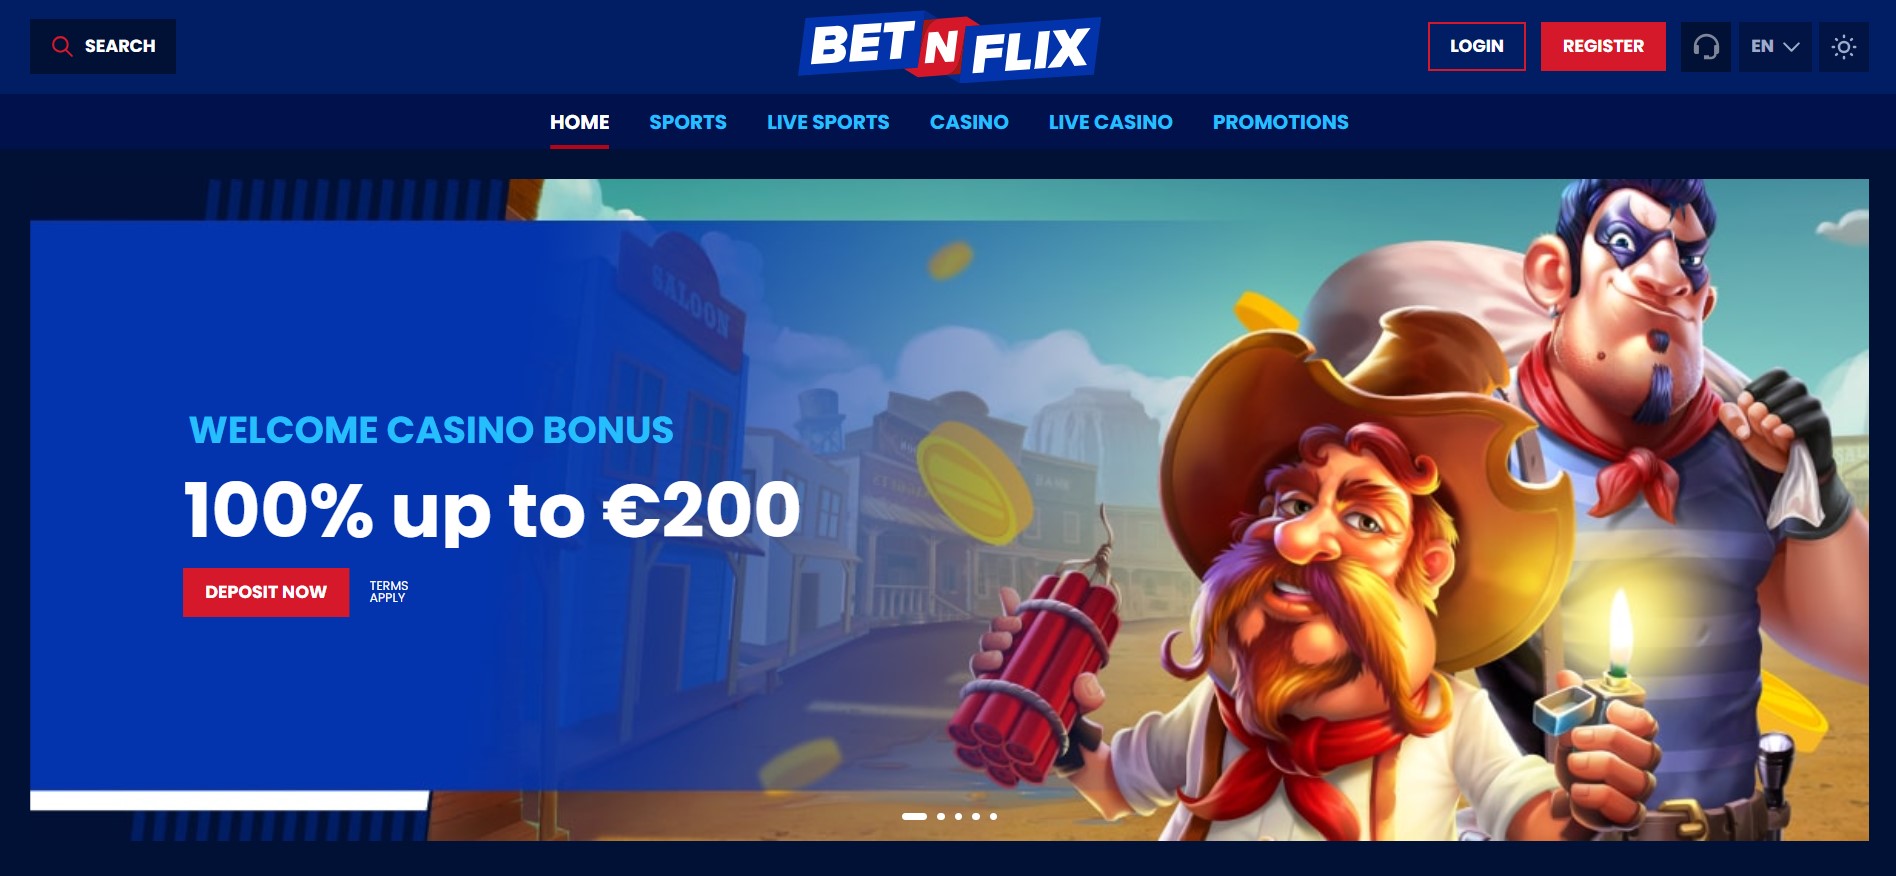 BetNFlix-Online-Casino-1